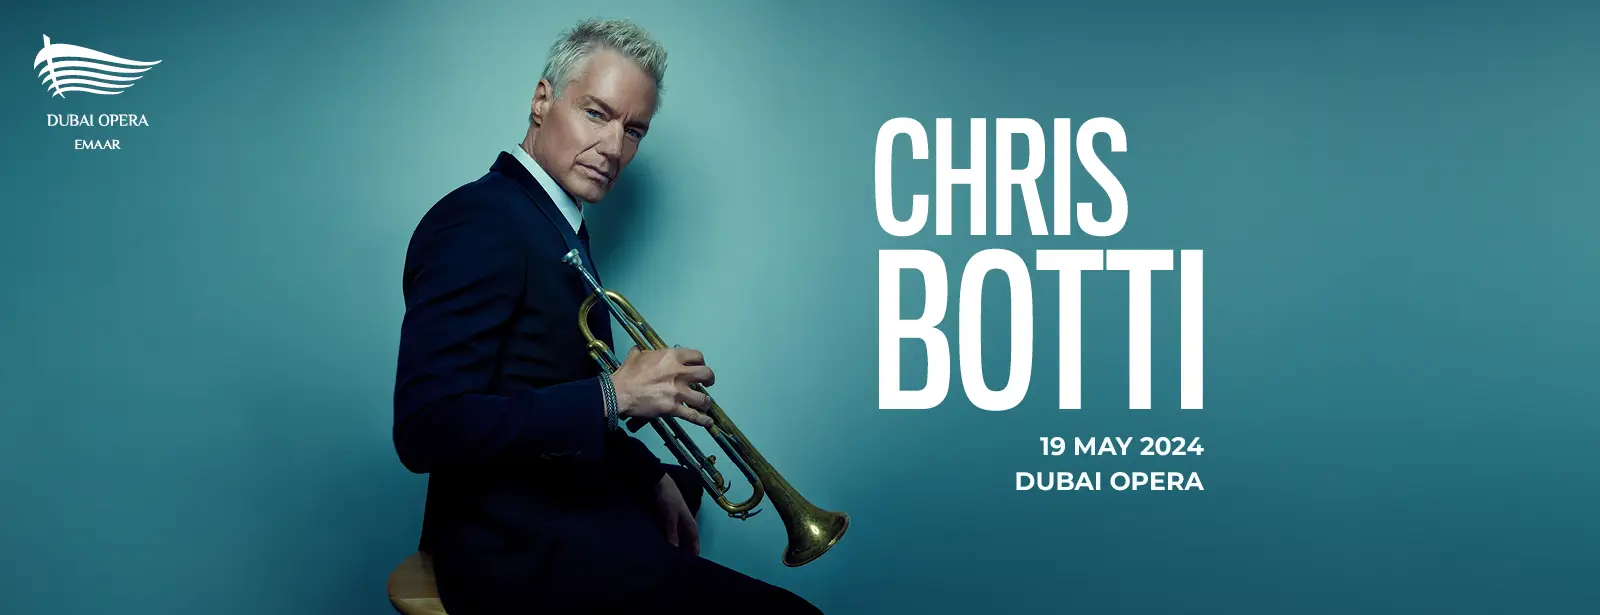 Chris Botti at Dubai Opera || Wow-Emirates